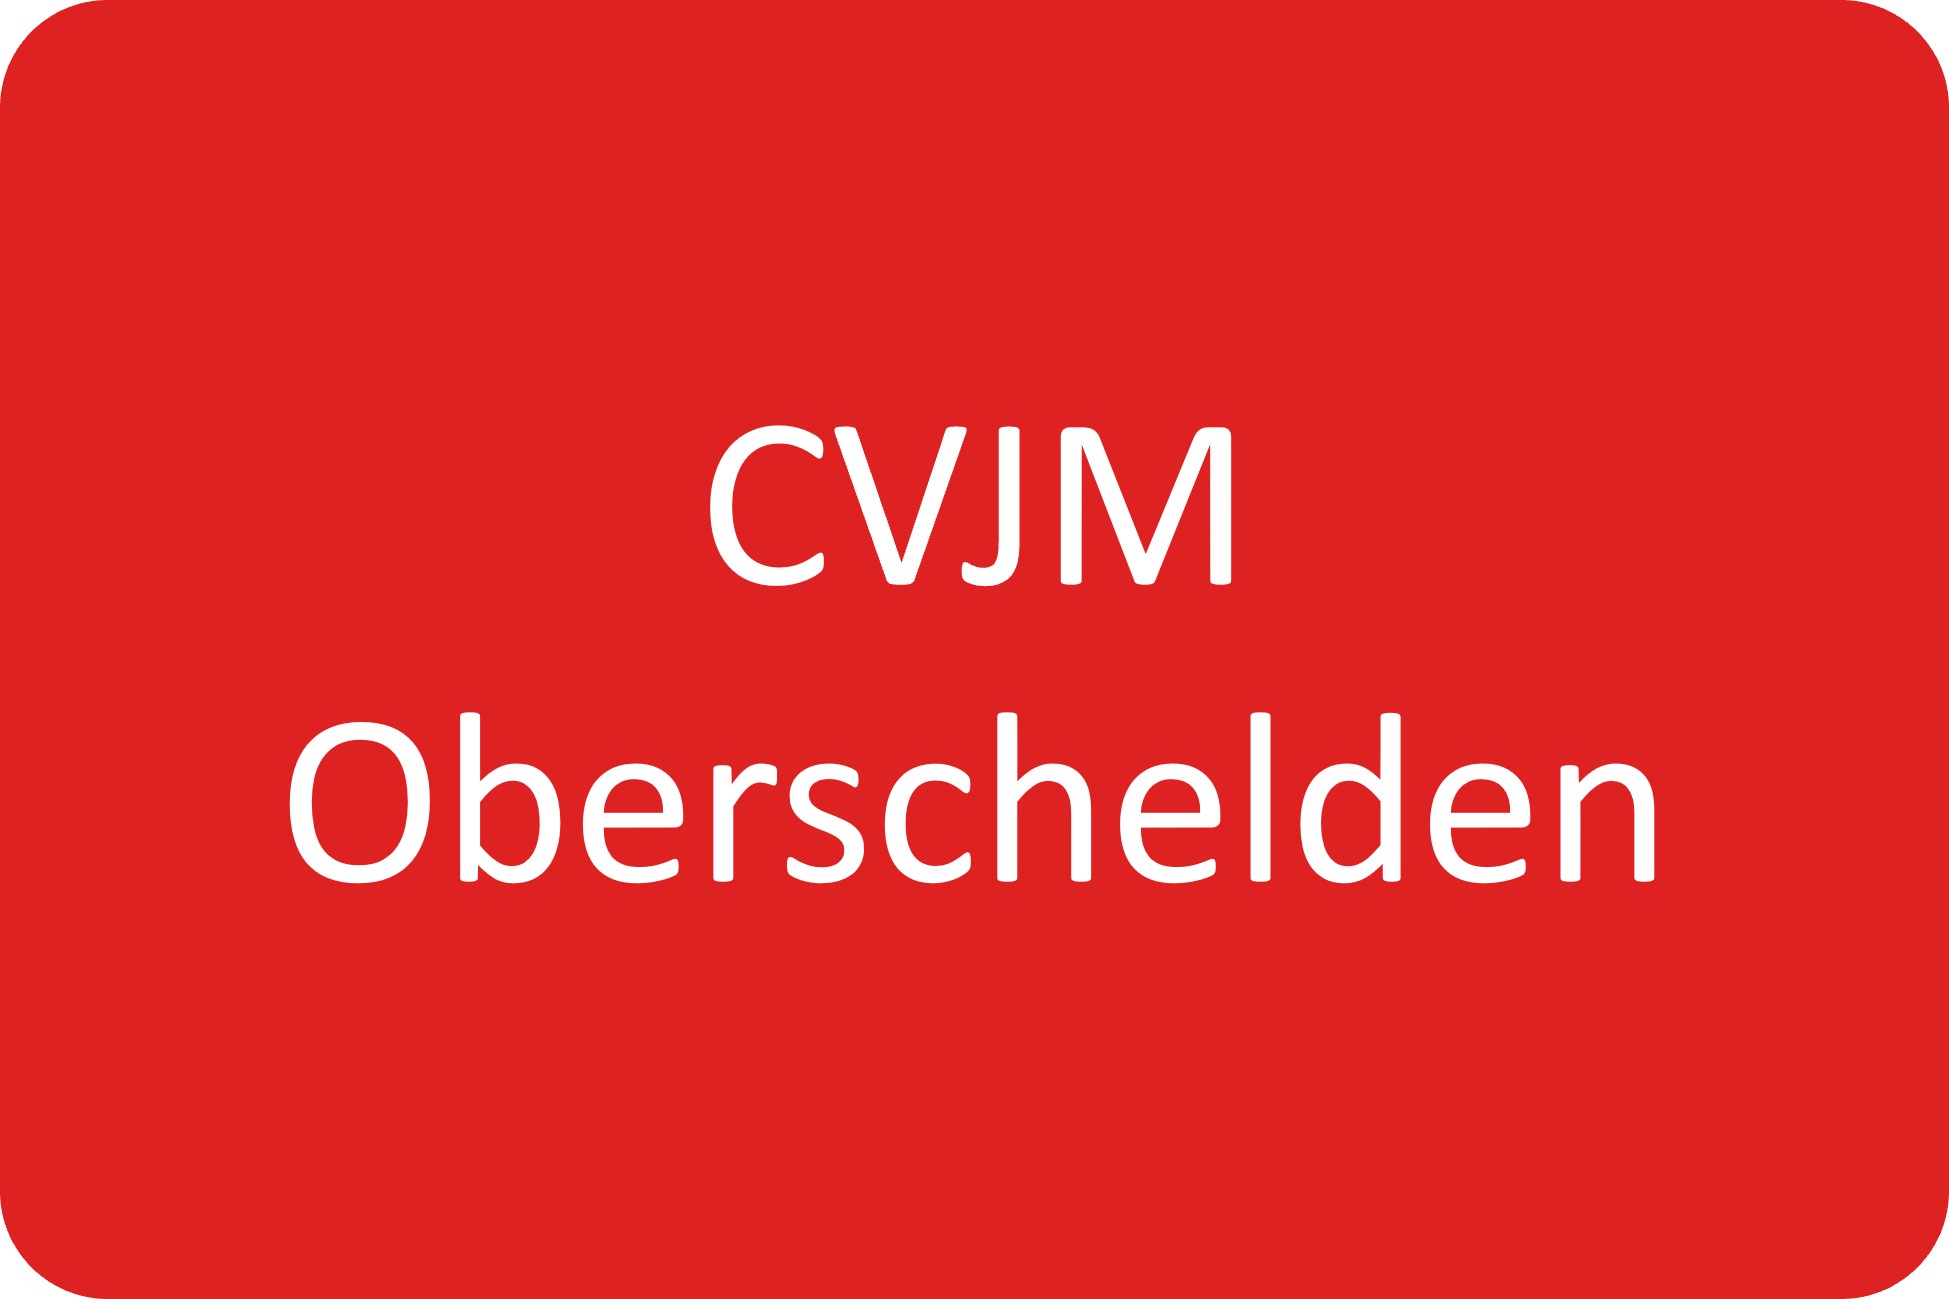 CVJM Oberschelden